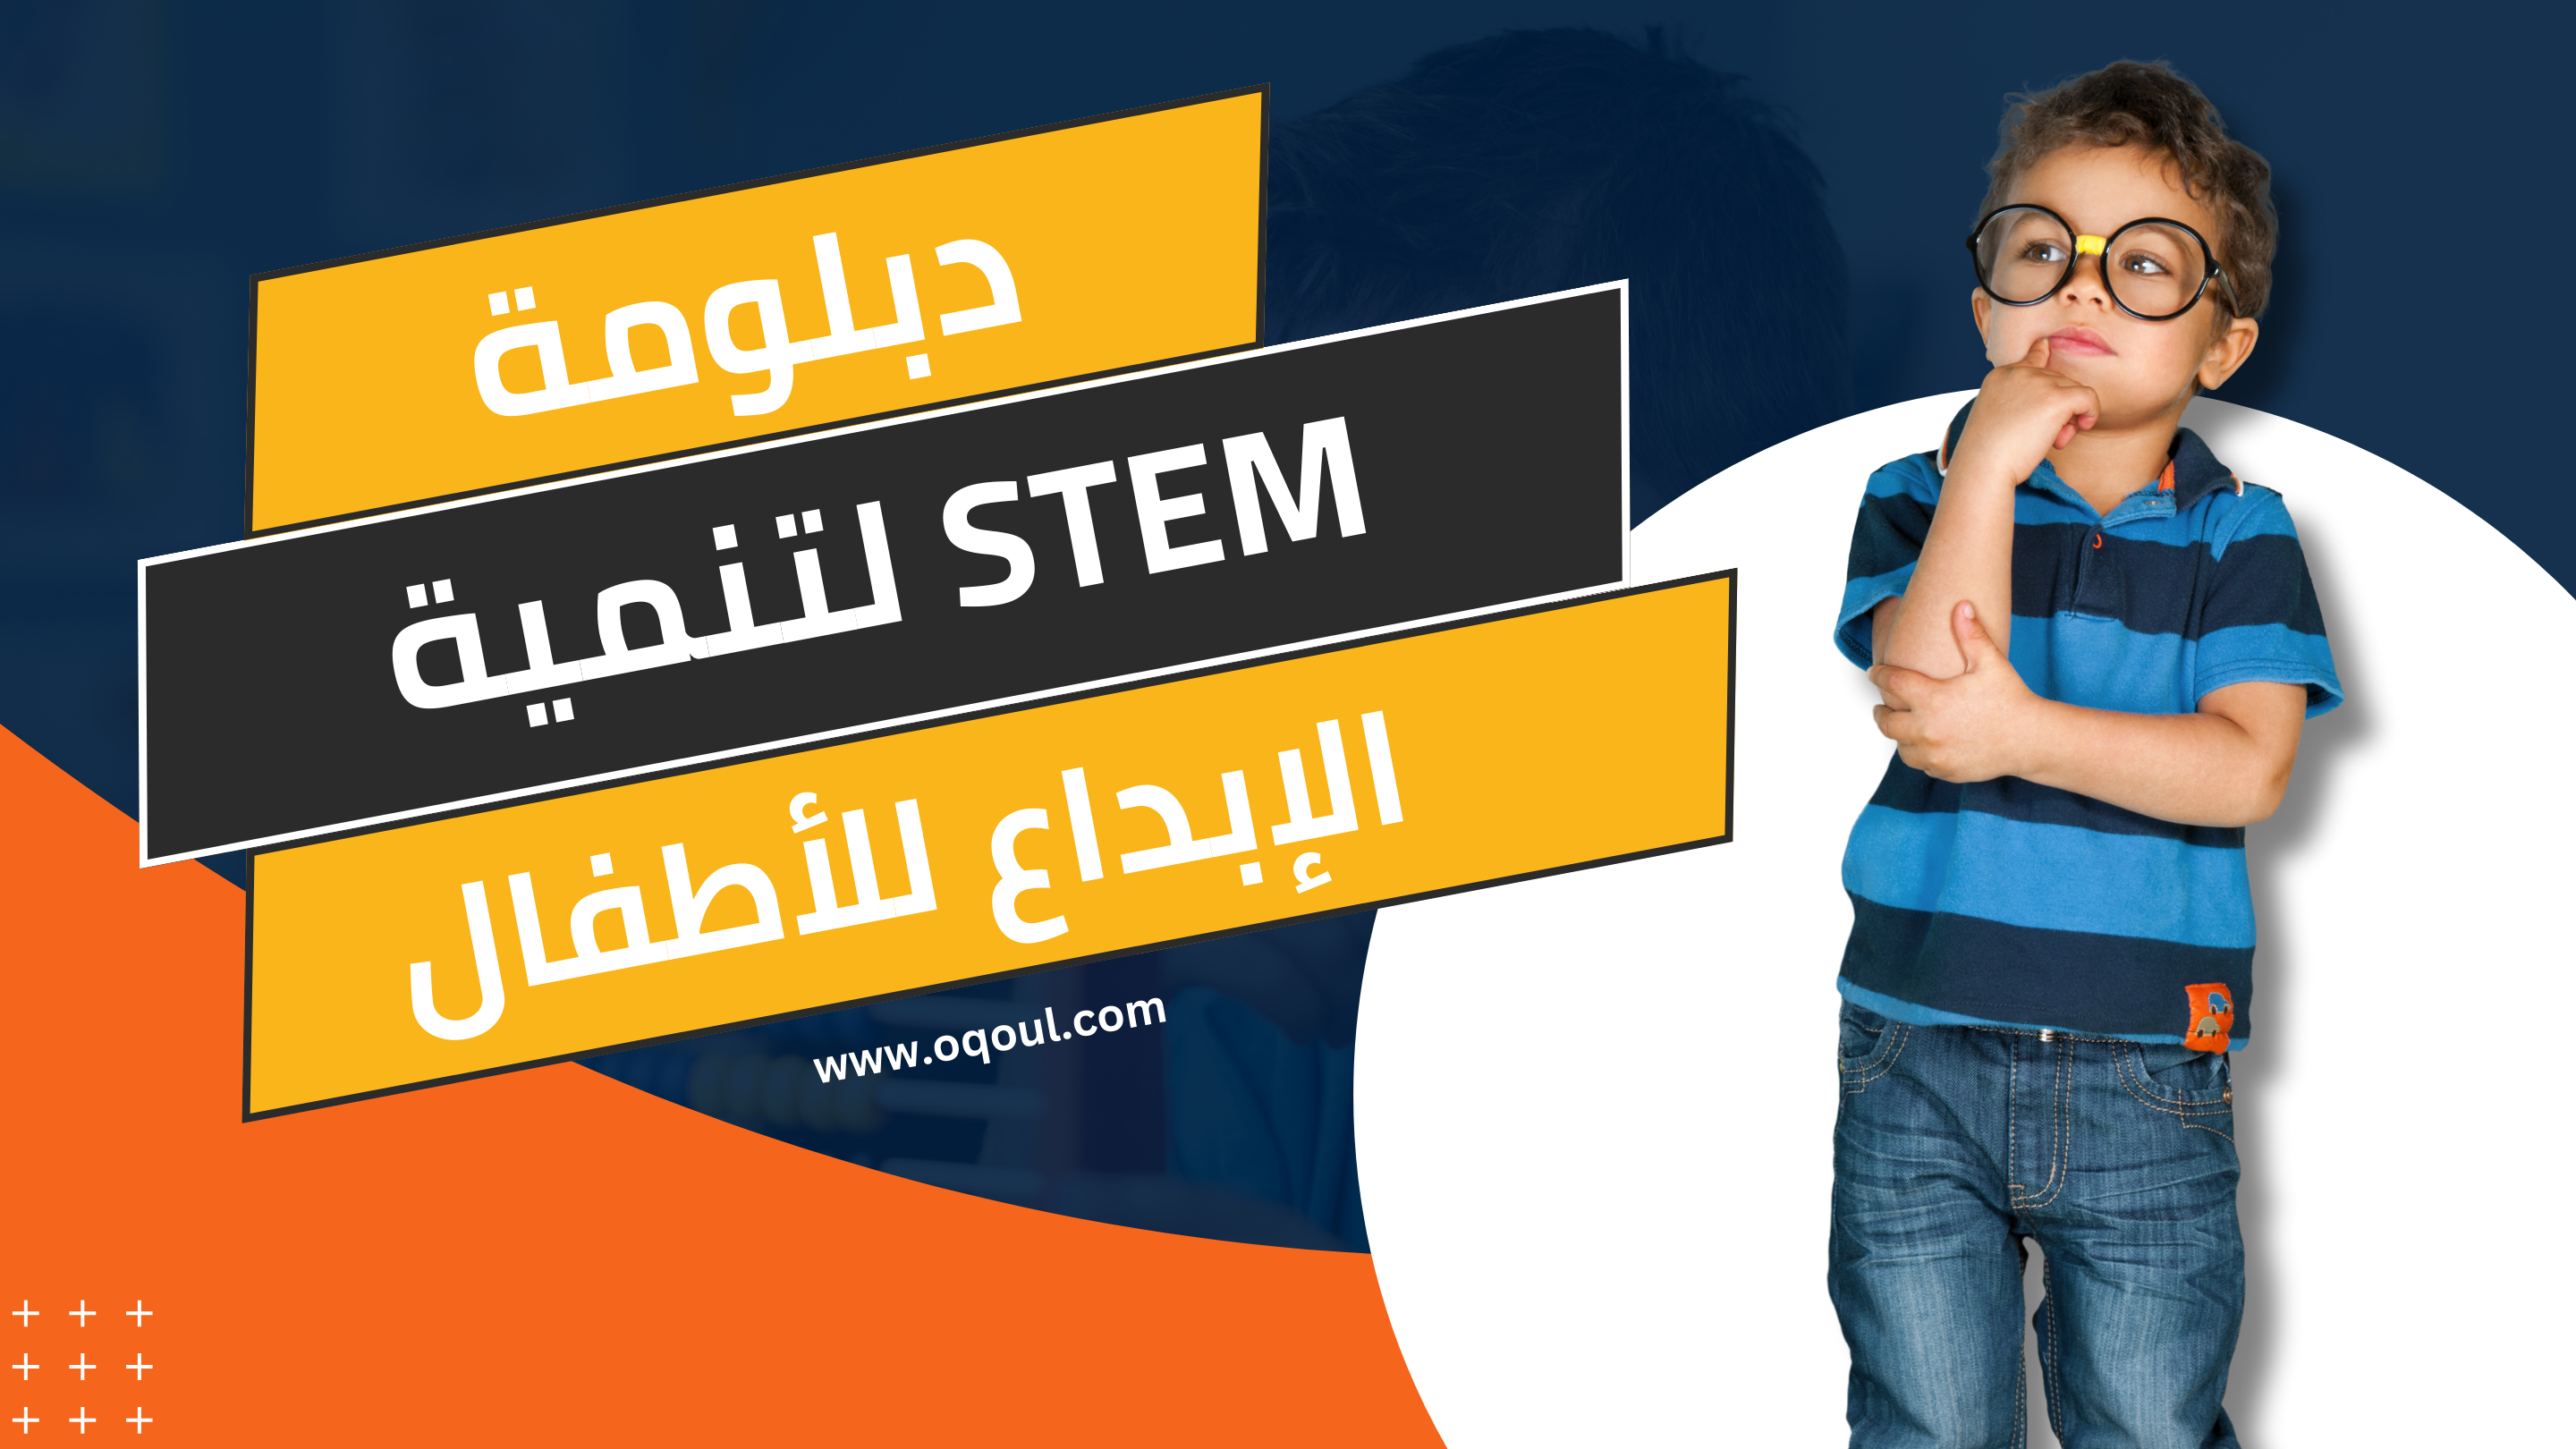 دبلومة STEM لتنمية الإبداع للأطفال